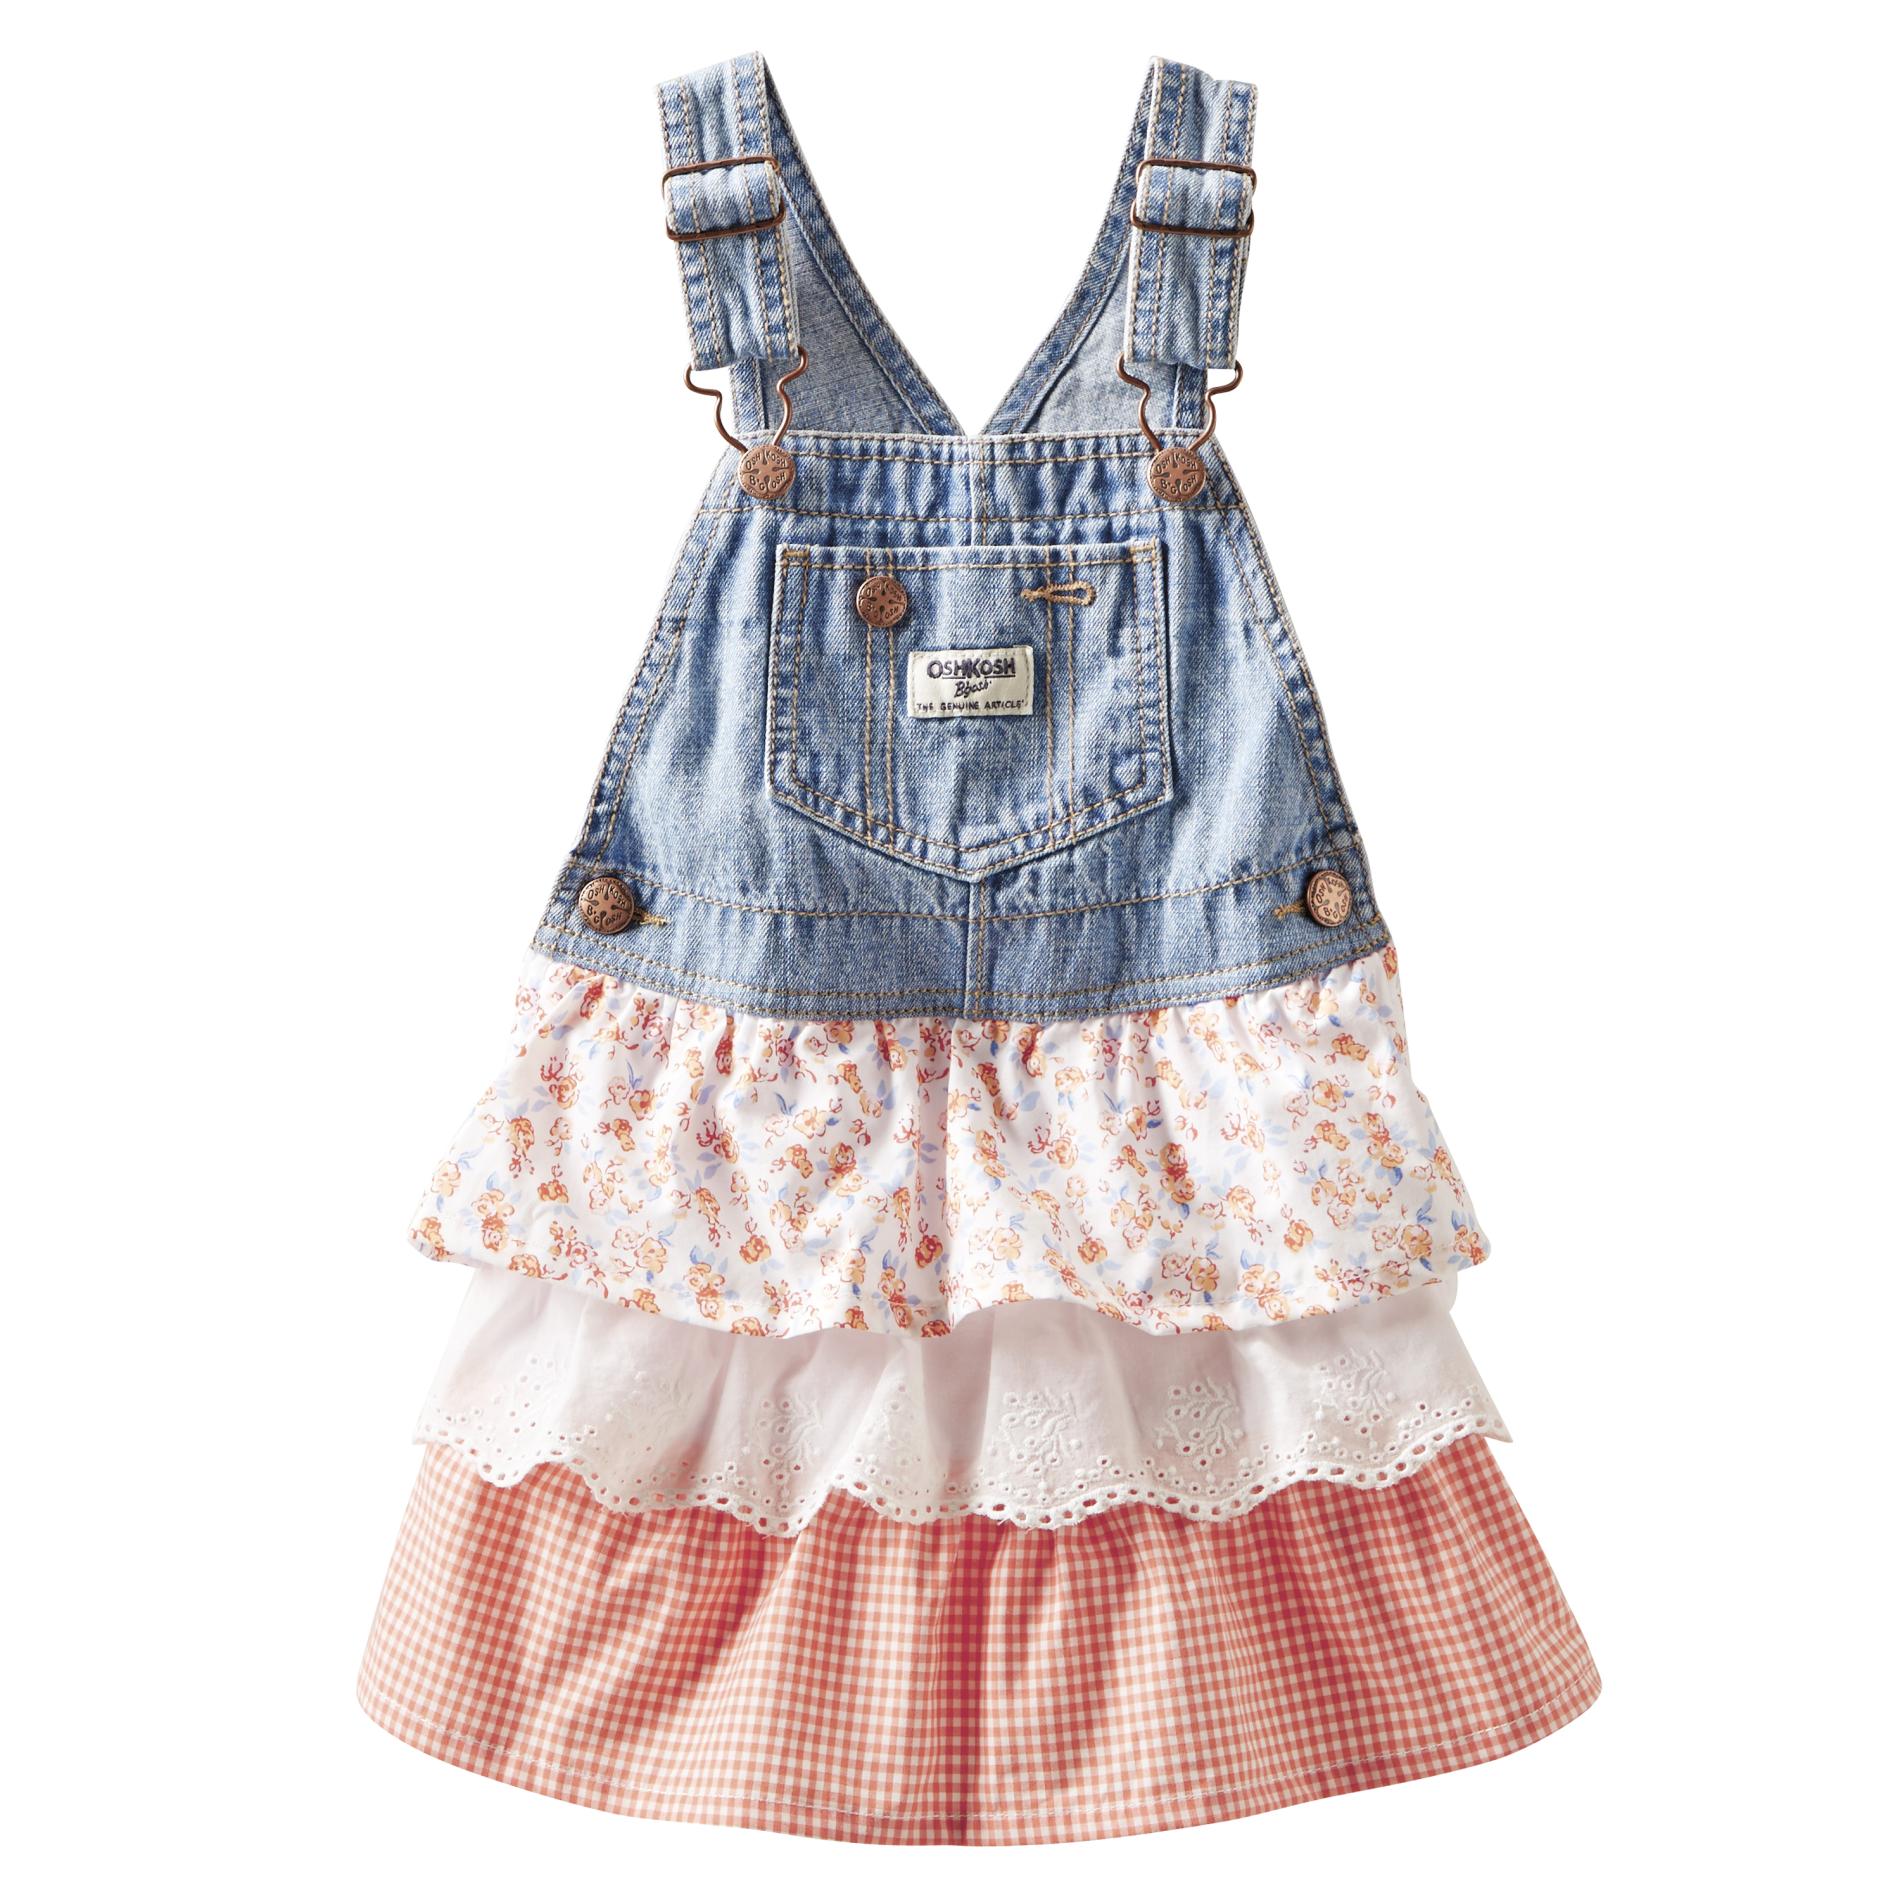 OshKosh Newborn & Infant Girl's Denim Skirt Overalls - Floral & Lace